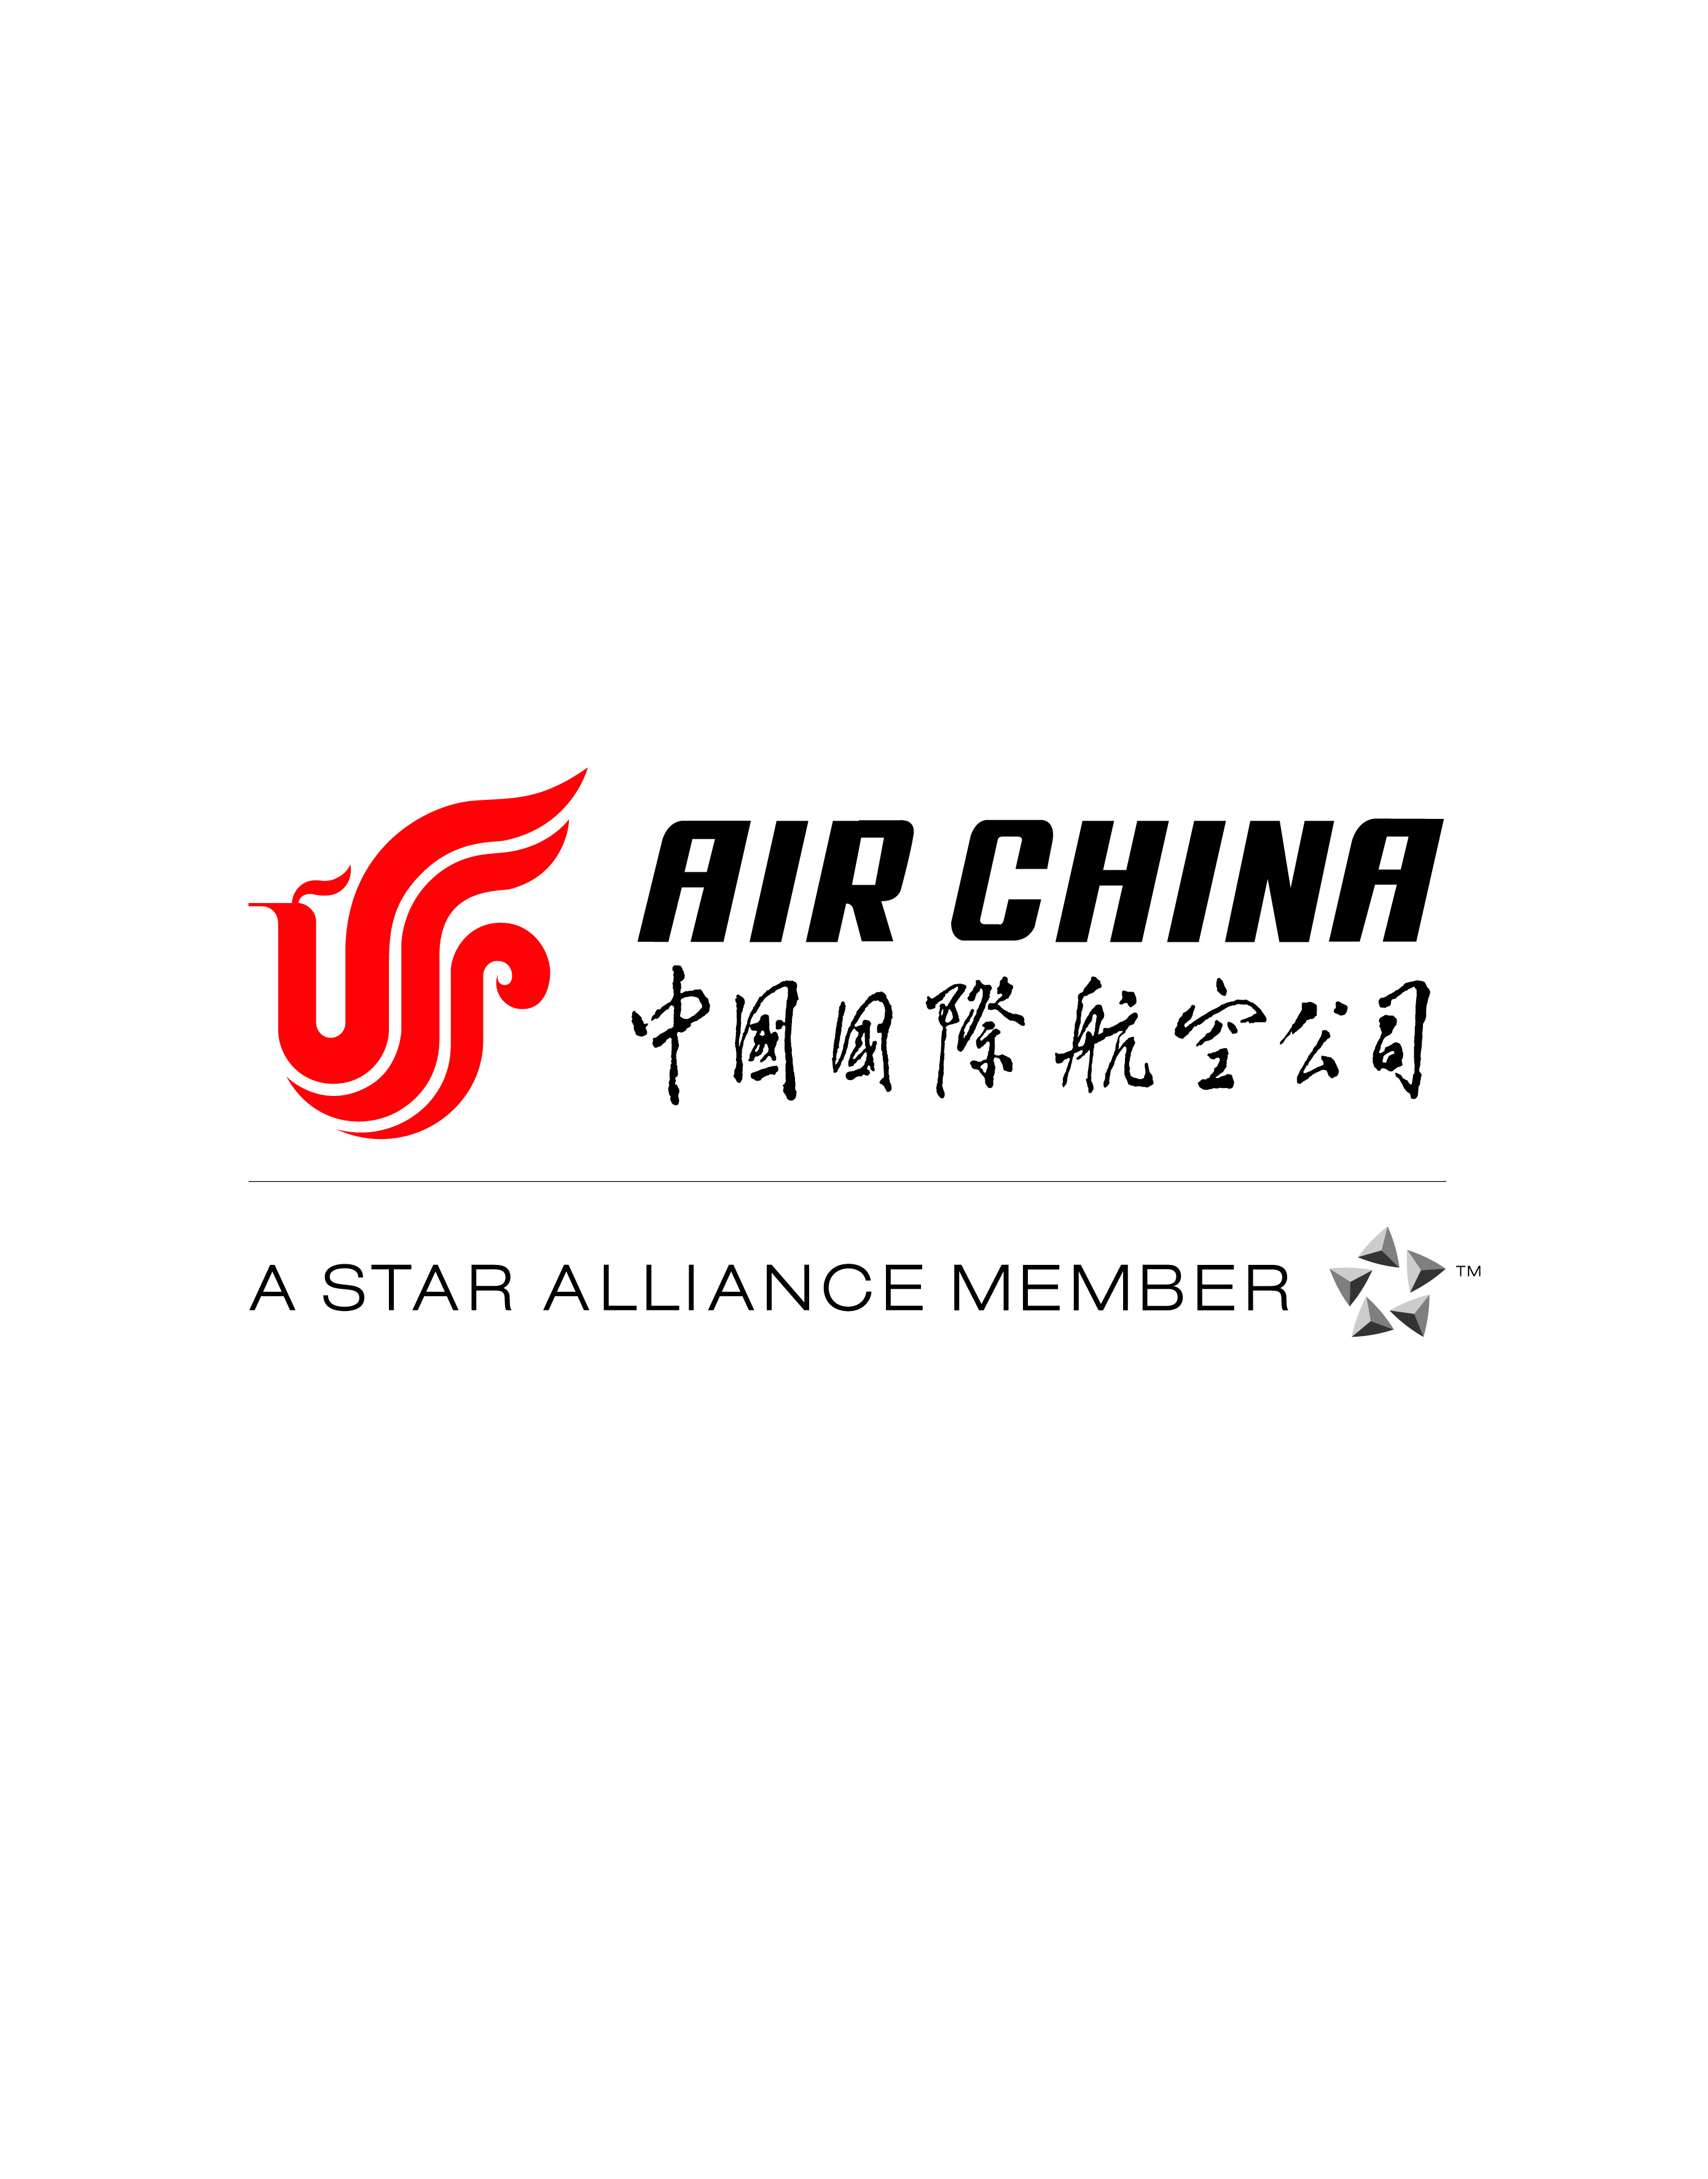 中国国际航空股份有限公司 - 搜狗百科